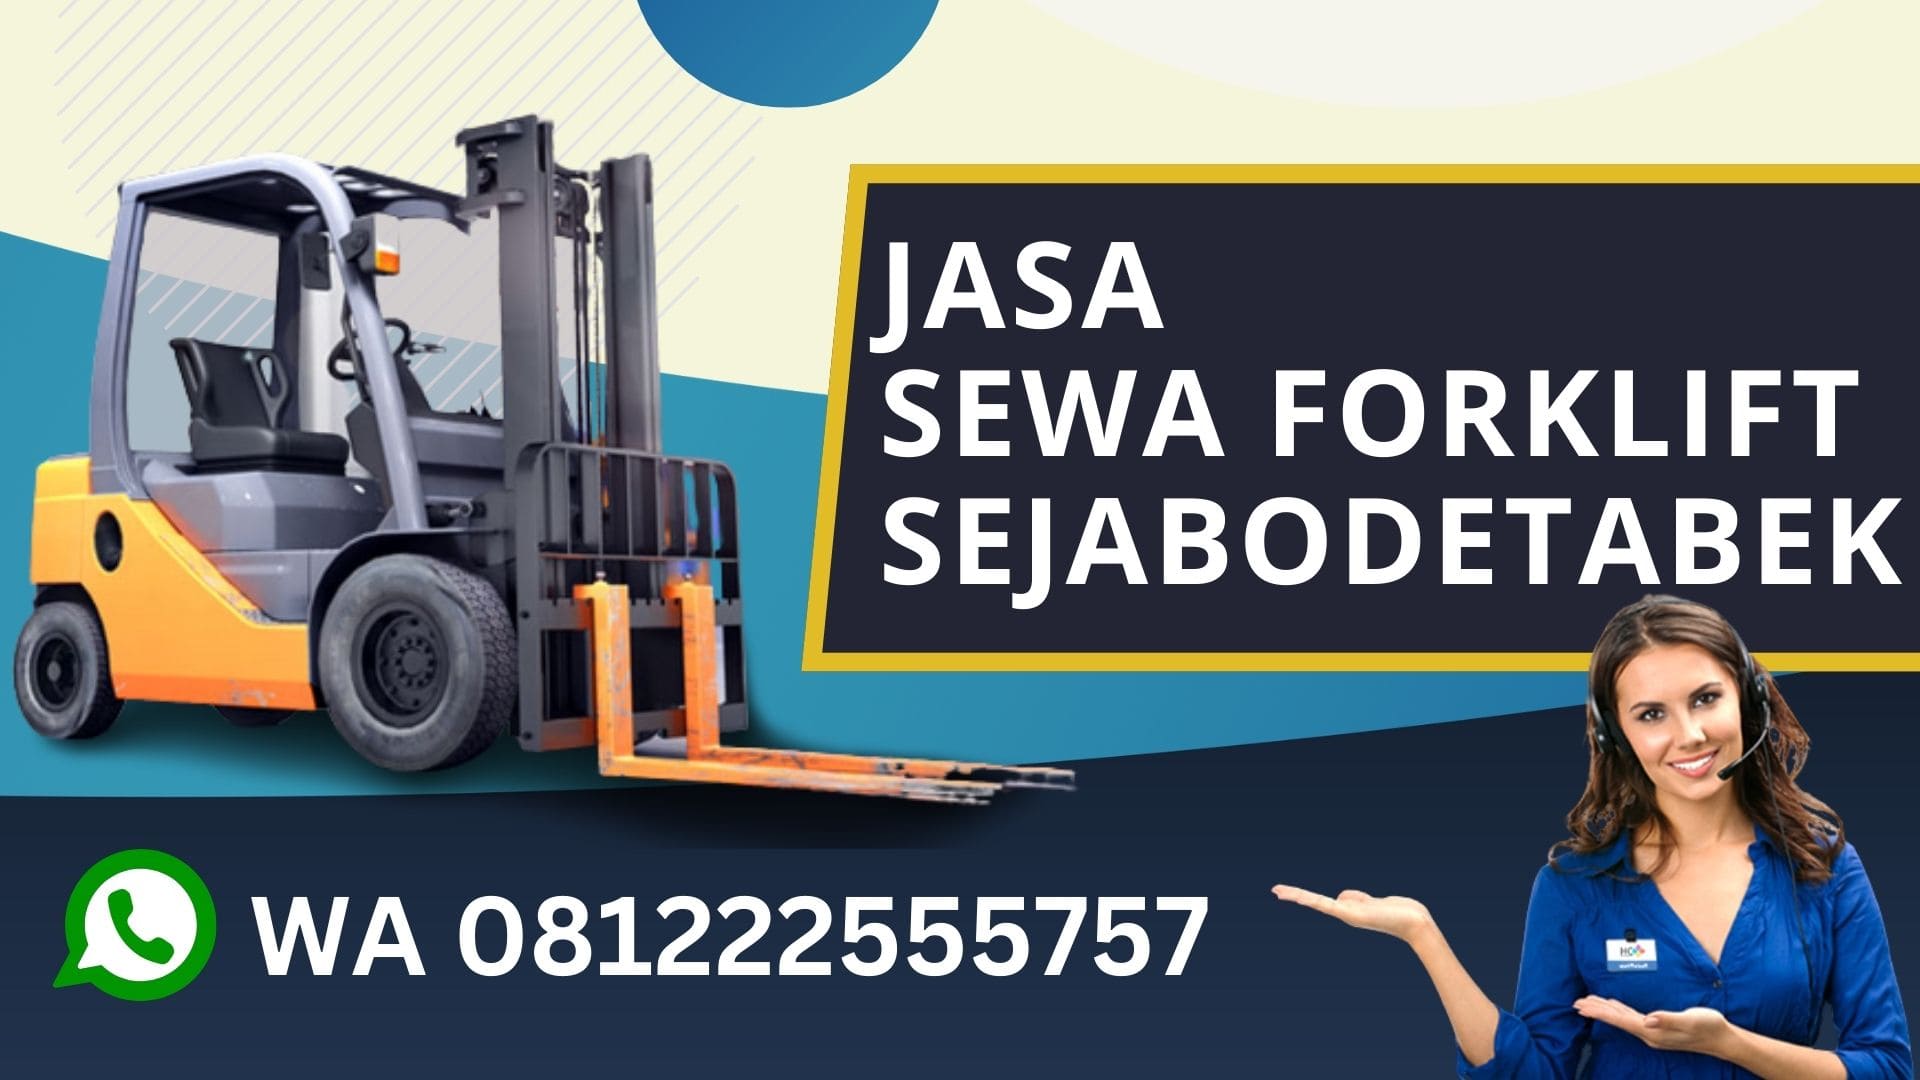 WA 081222555757 Sewa Forklift Tanah Abang Jakarta Pusat, Rental Forklift, biaya sewa forklift harian, rental forklift bulanan